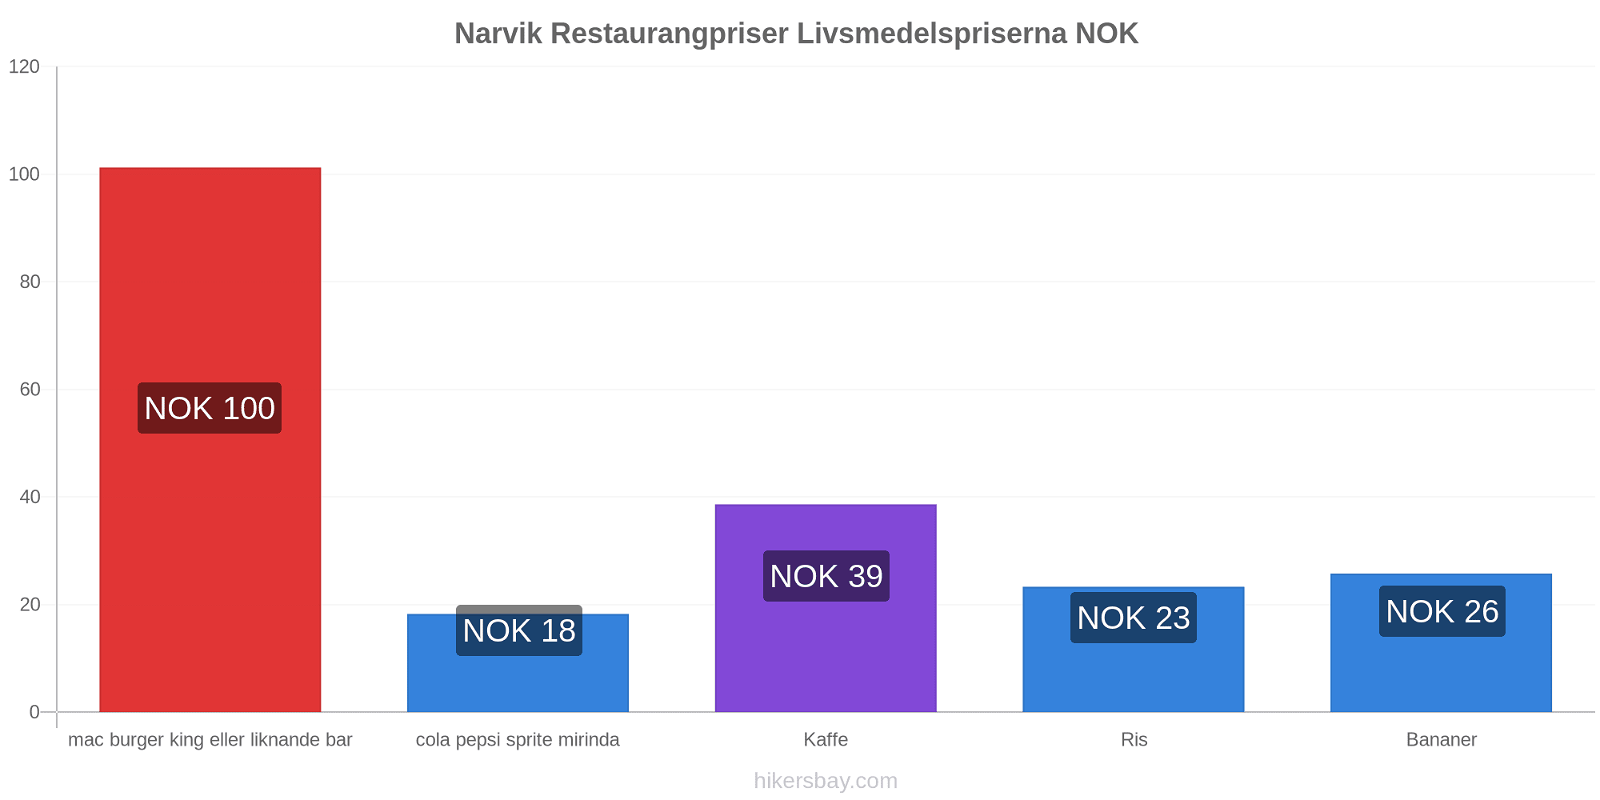 Narvik prisändringar hikersbay.com